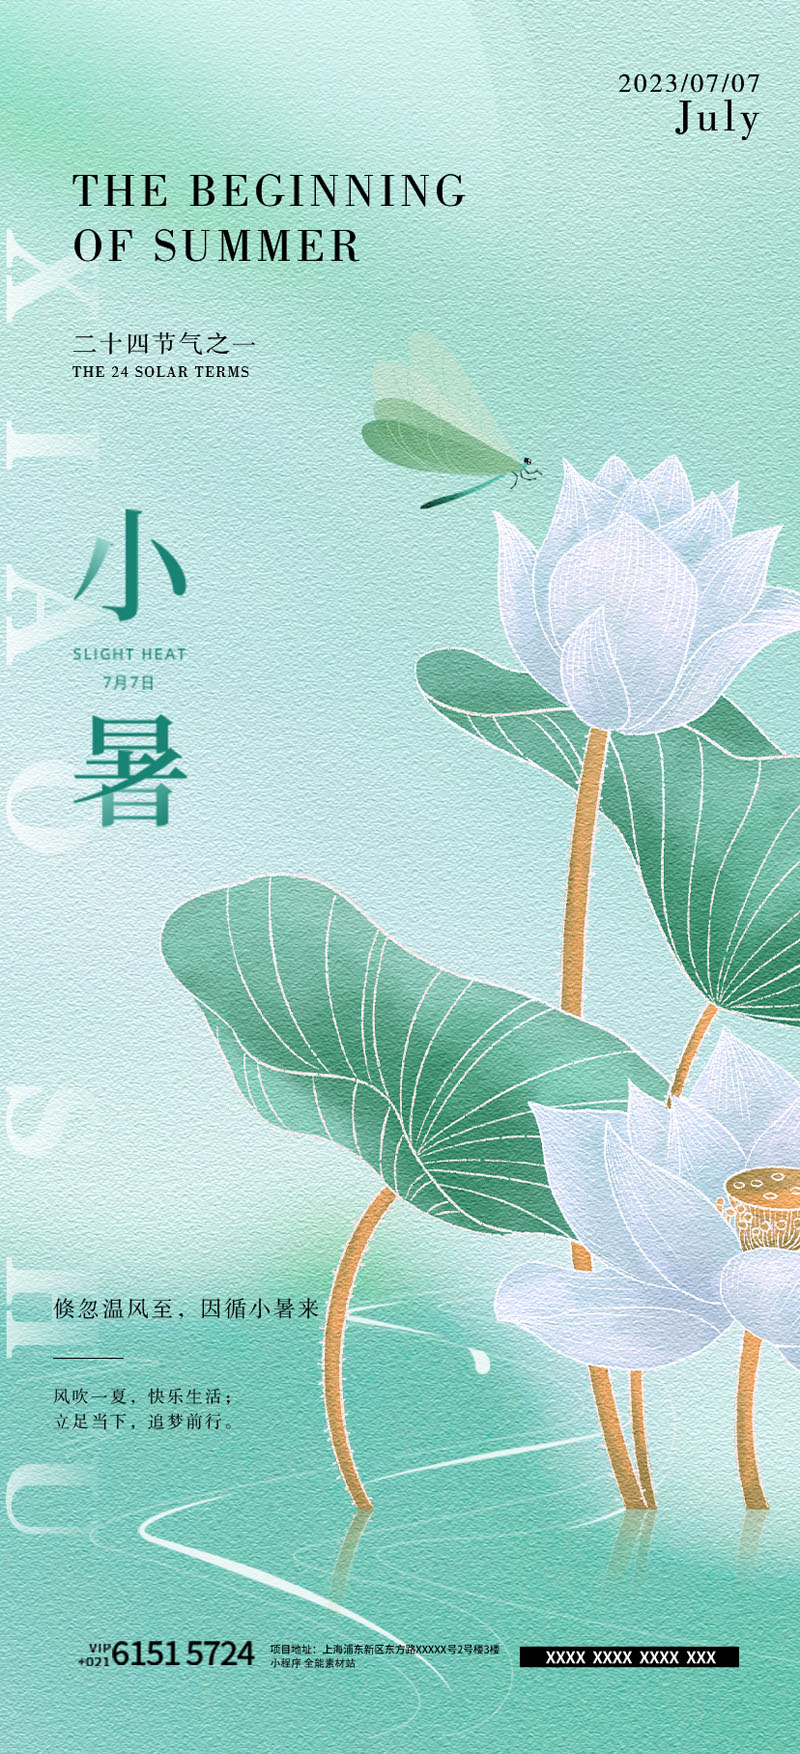 93款中国风24节气小暑宣传海报PSD模板 设计素材 第10张